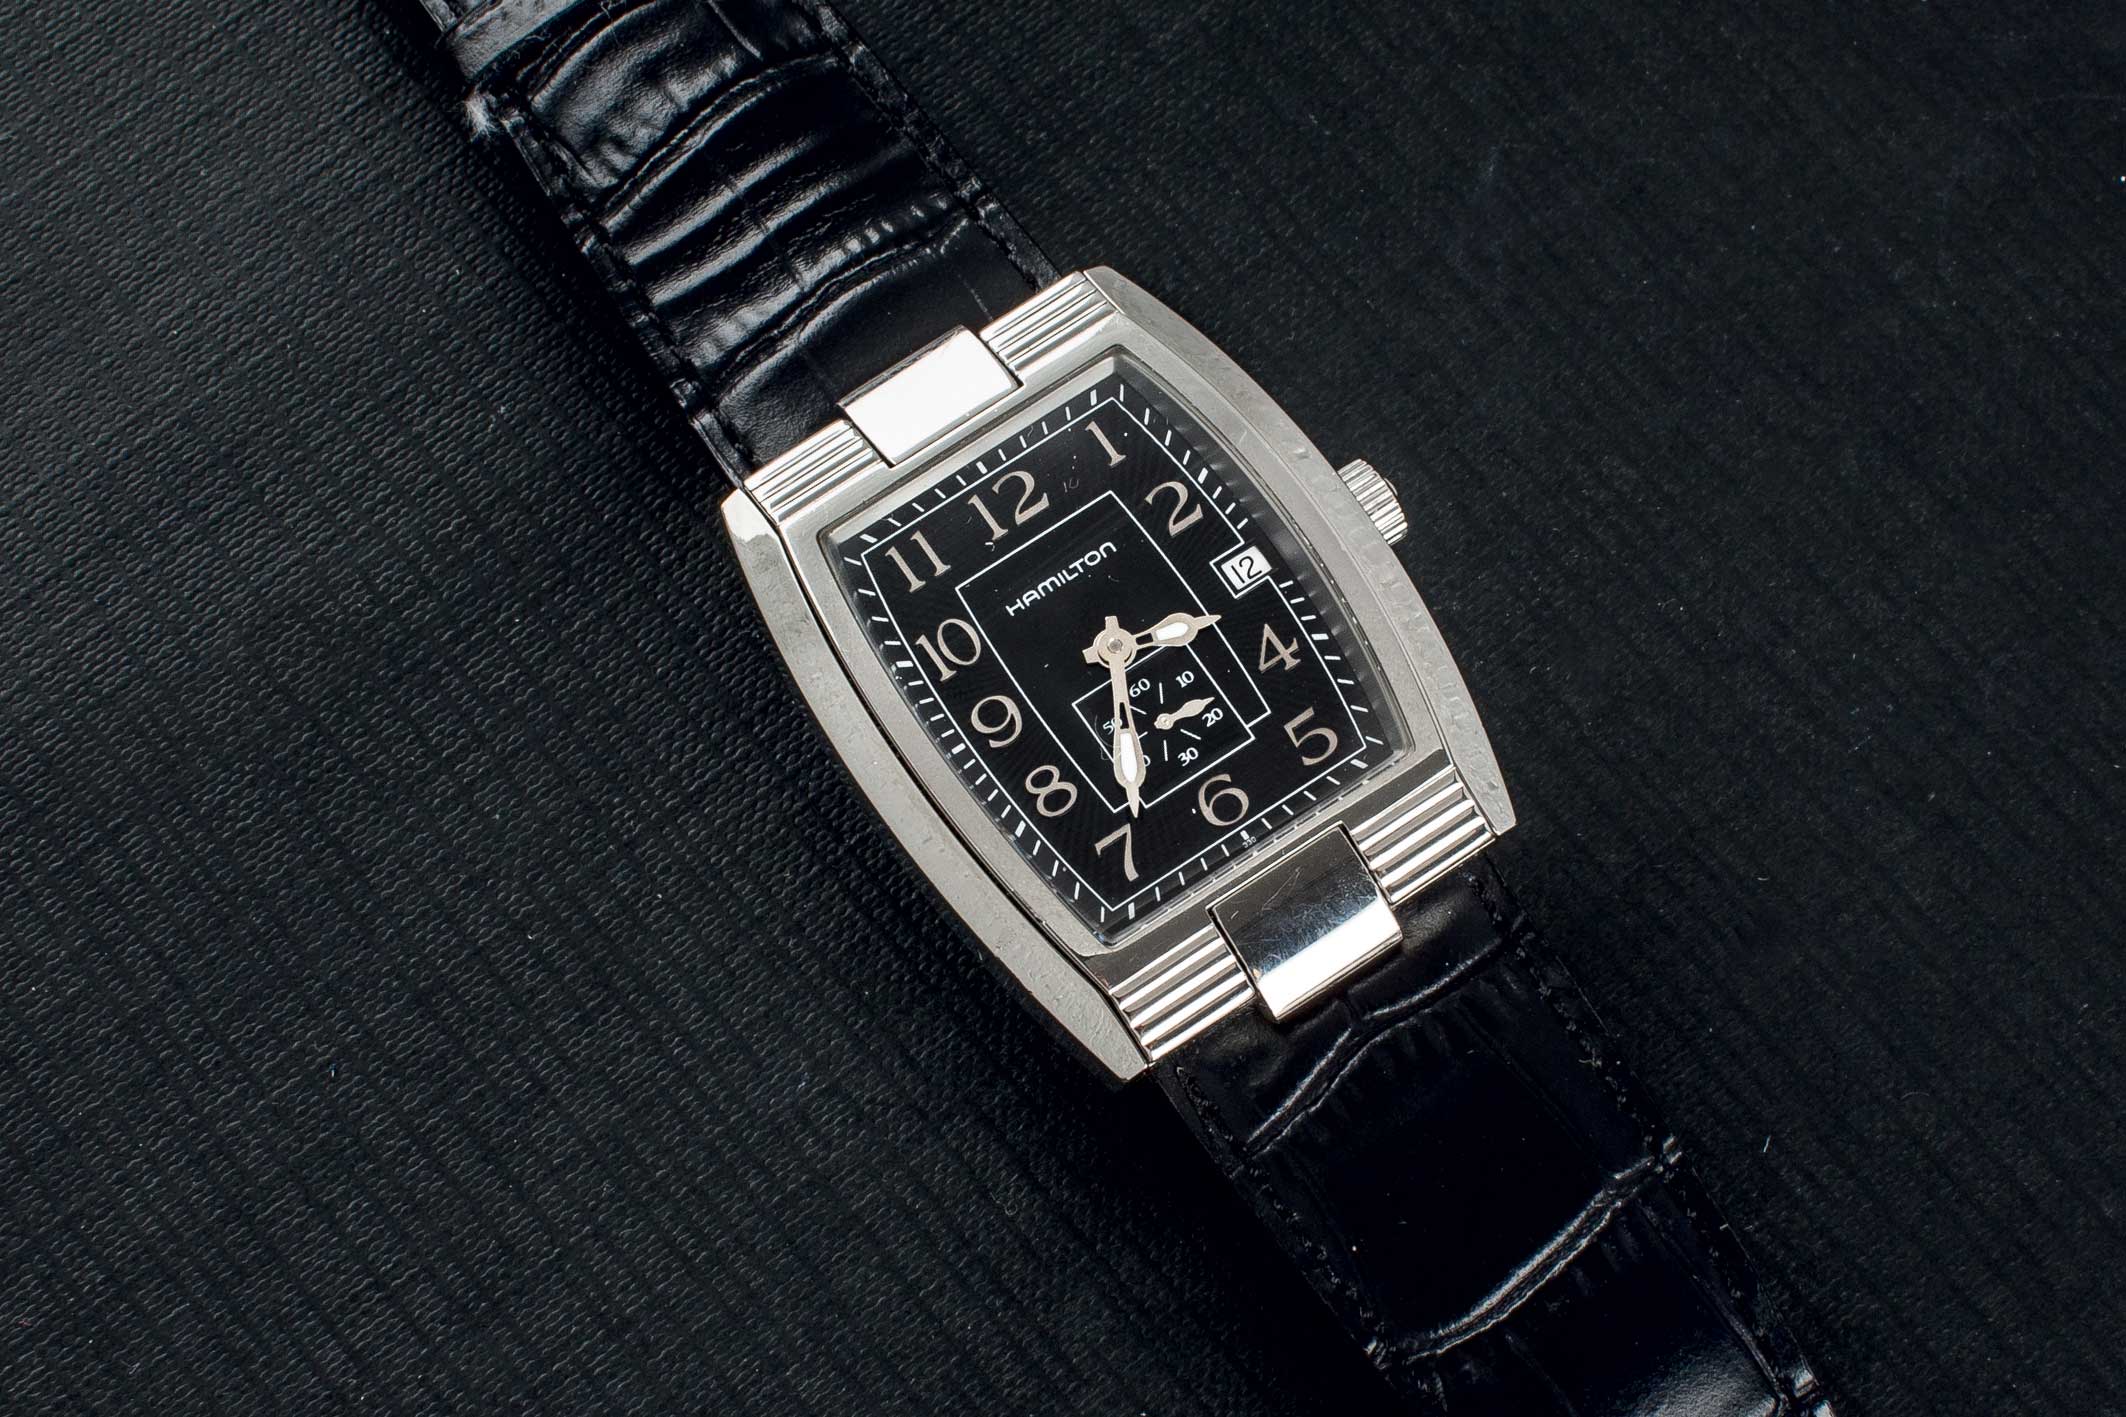 A Hamilton steel wrist watch. Reloj de pulsera para caballero marca HAMILTON, realizado en acero.